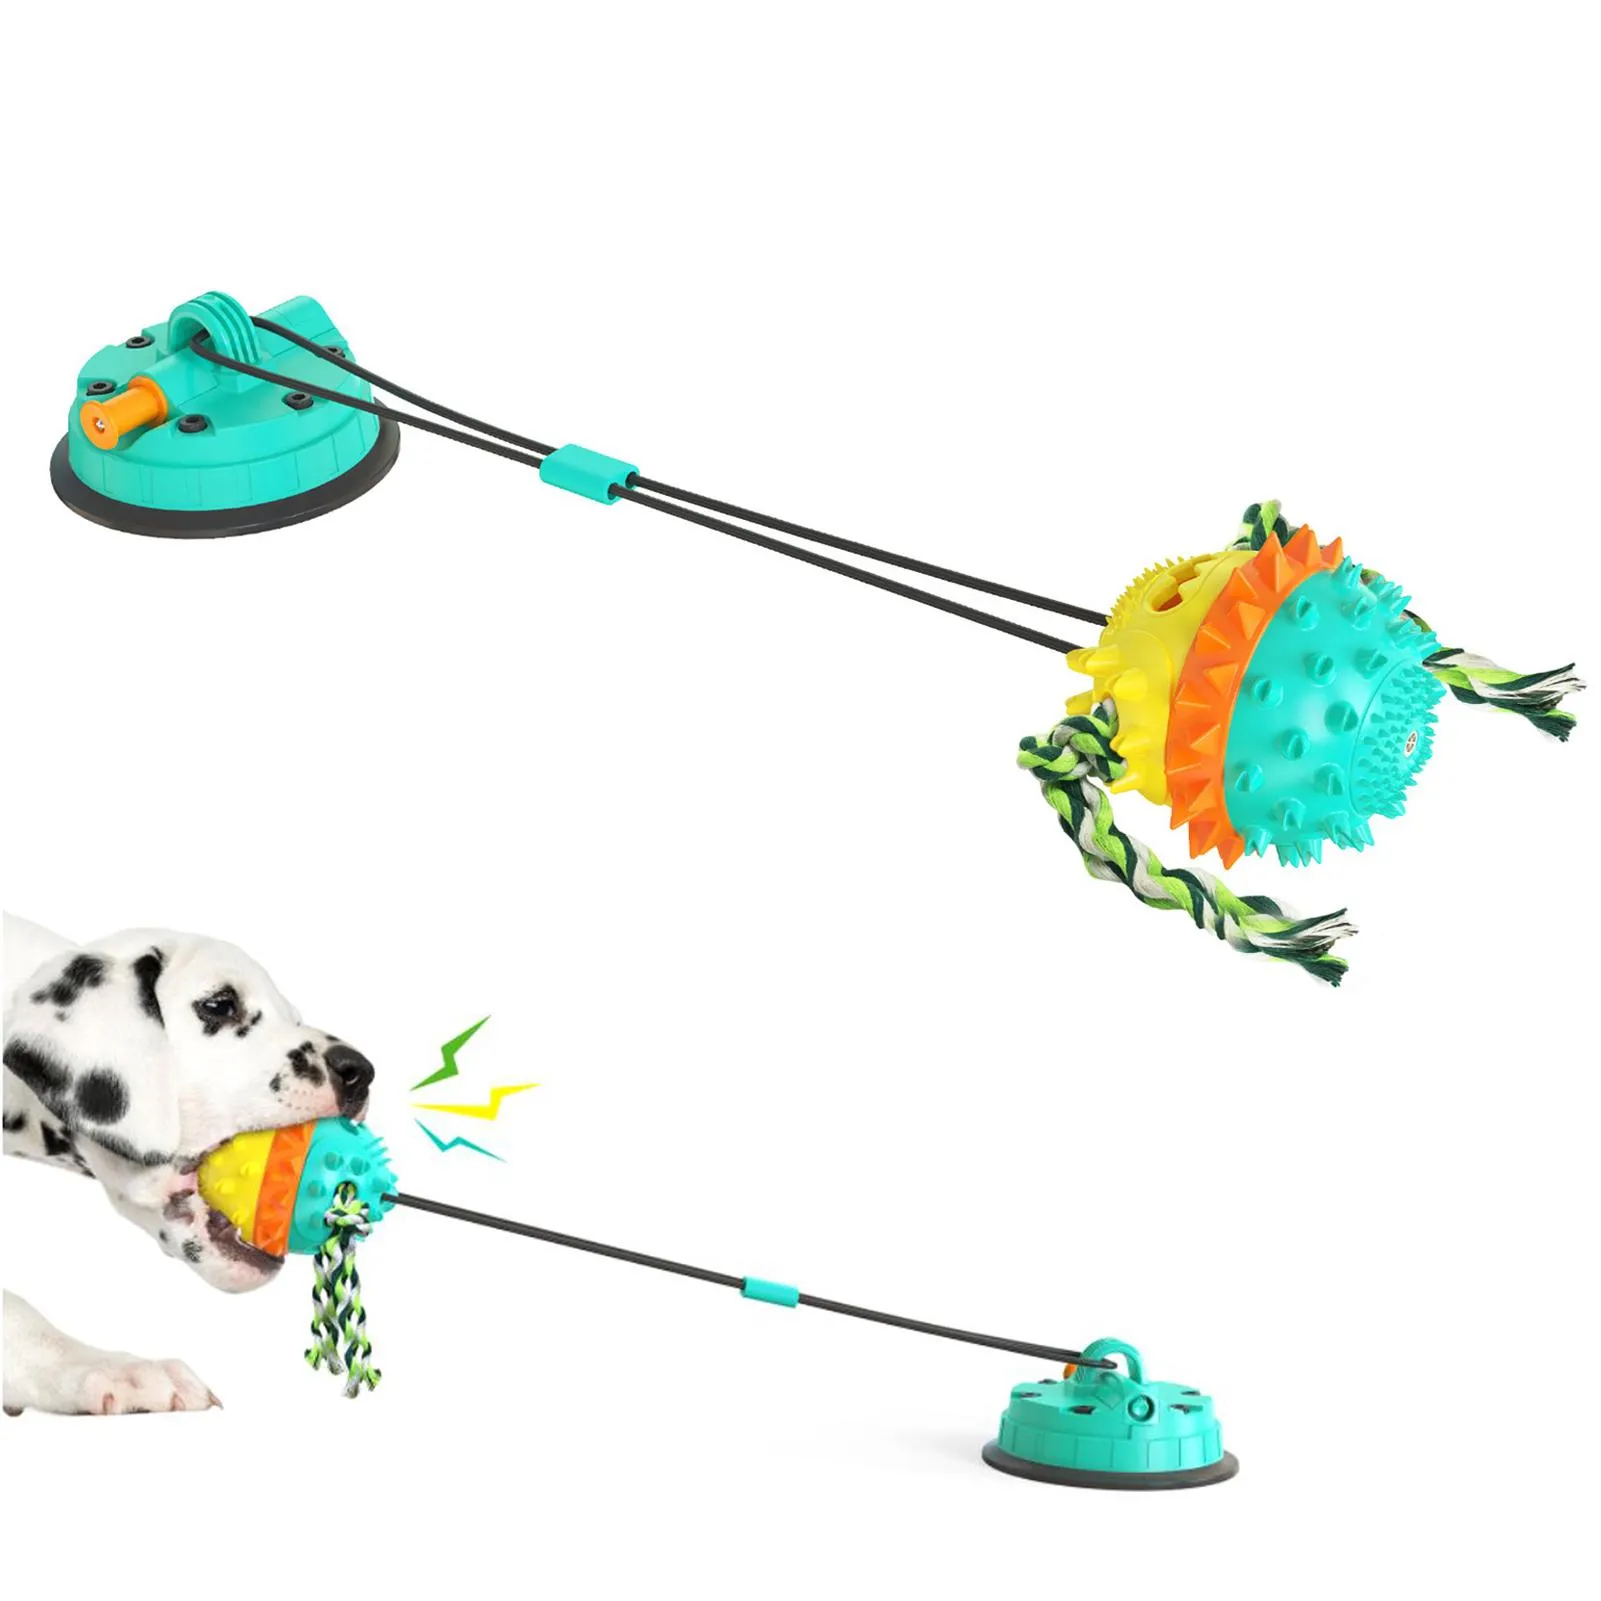 Trelas ventosa a vácuo brinquedo do cão filhote de cachorro molar brinquedo interativo do cão para mastigadores agressivos indestrutível cão dentição mastigar brinquedo